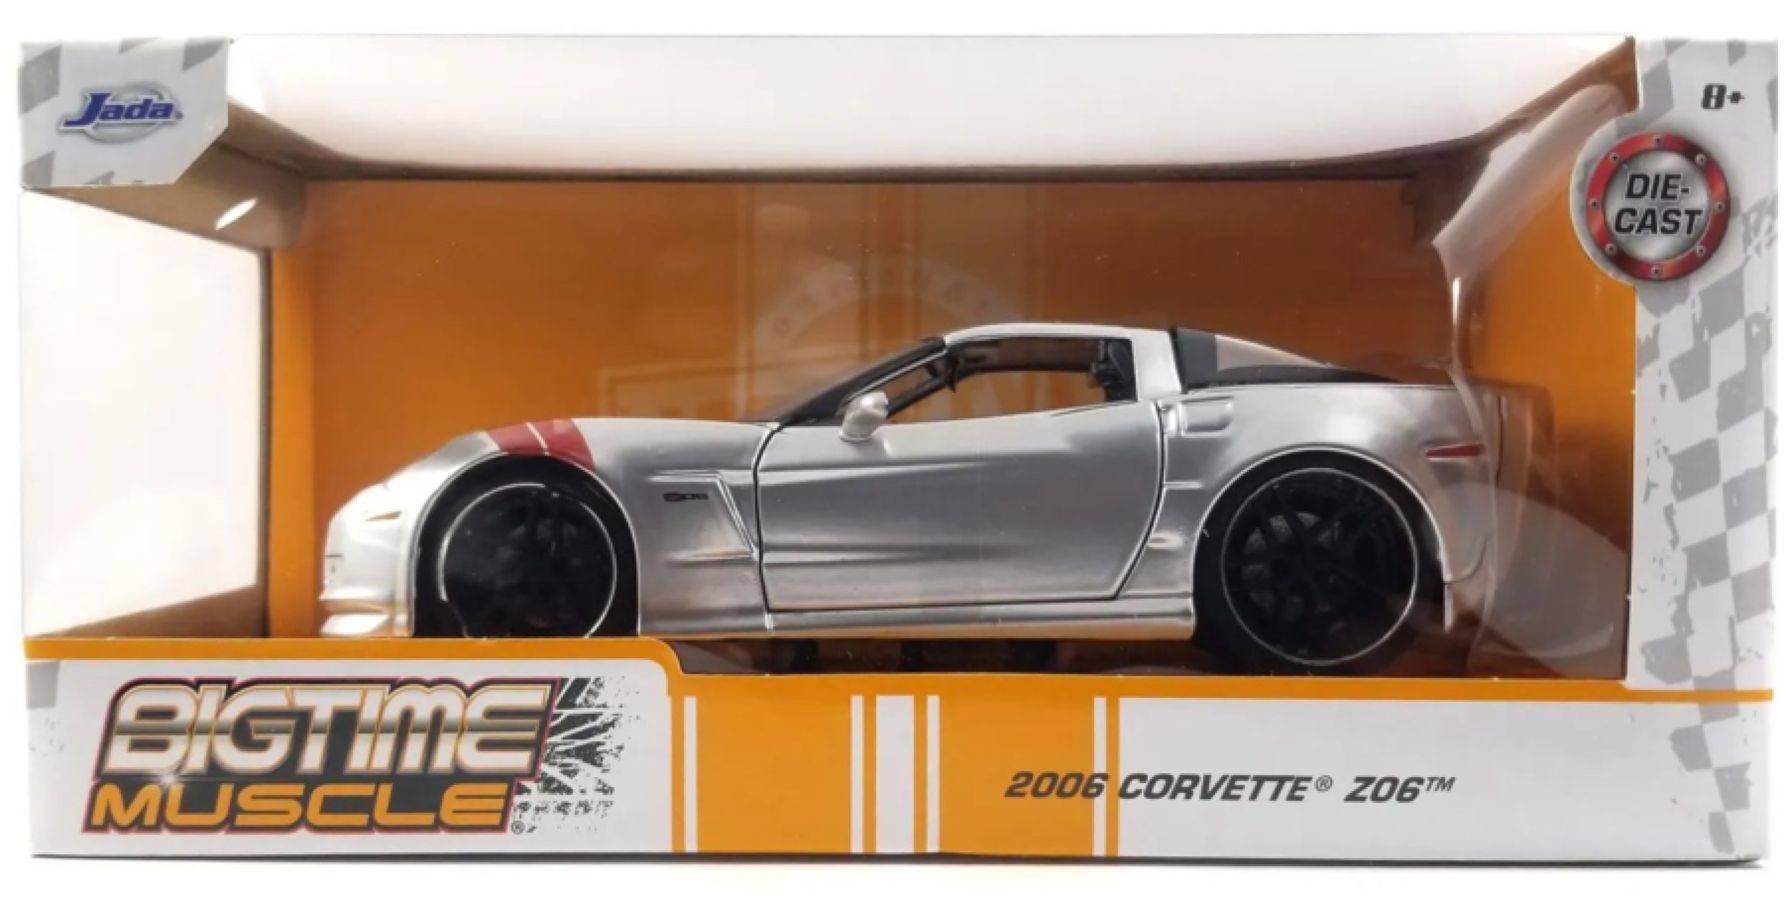 JAD33053 Big Time Muscle - 2006 Corvette Z06 1:24 Scale - Jada Toys - Titan Pop Culture